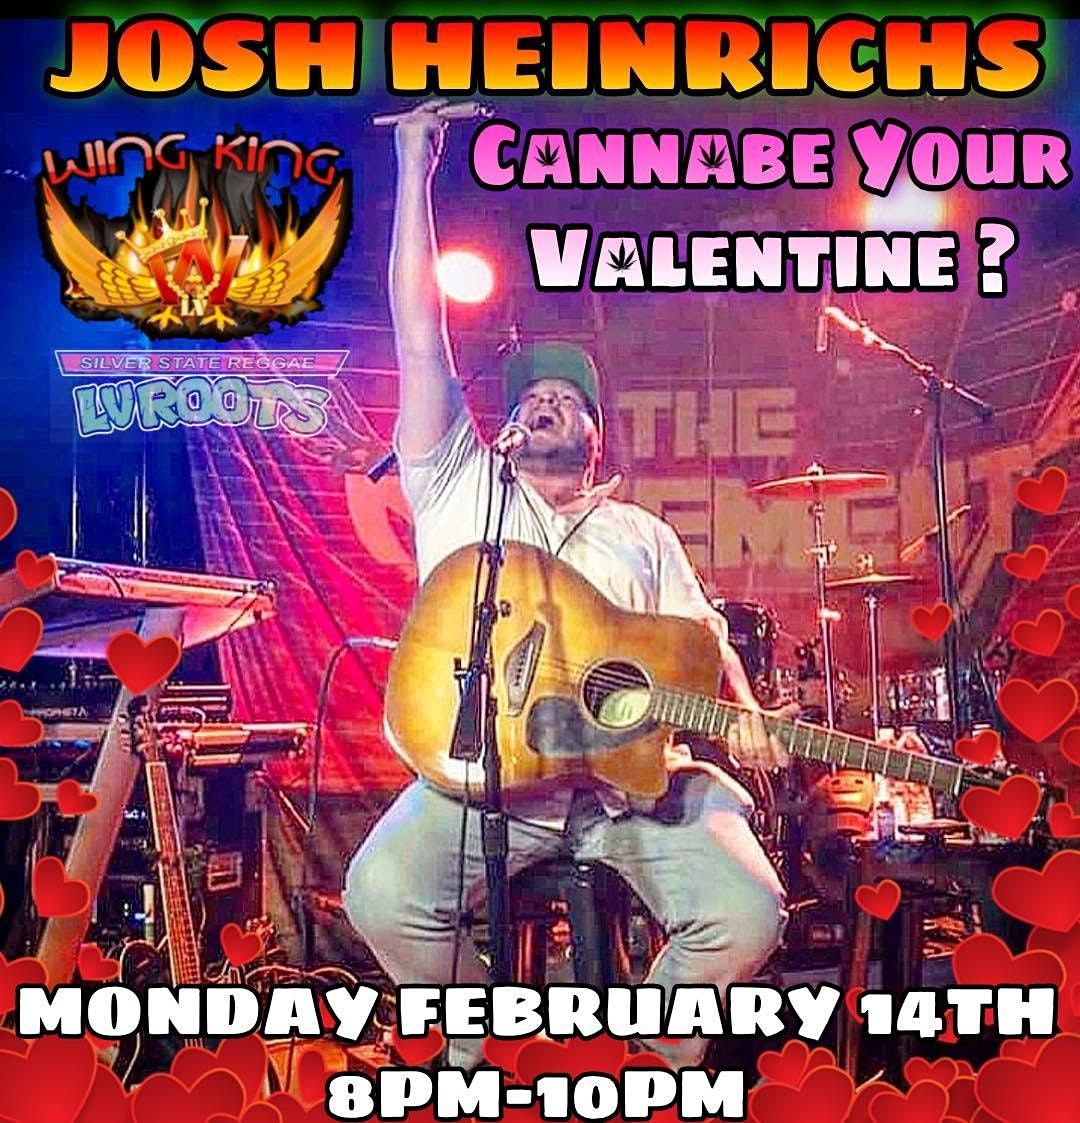 Josh Heinrichs Valentine's Day Bash at Wing King